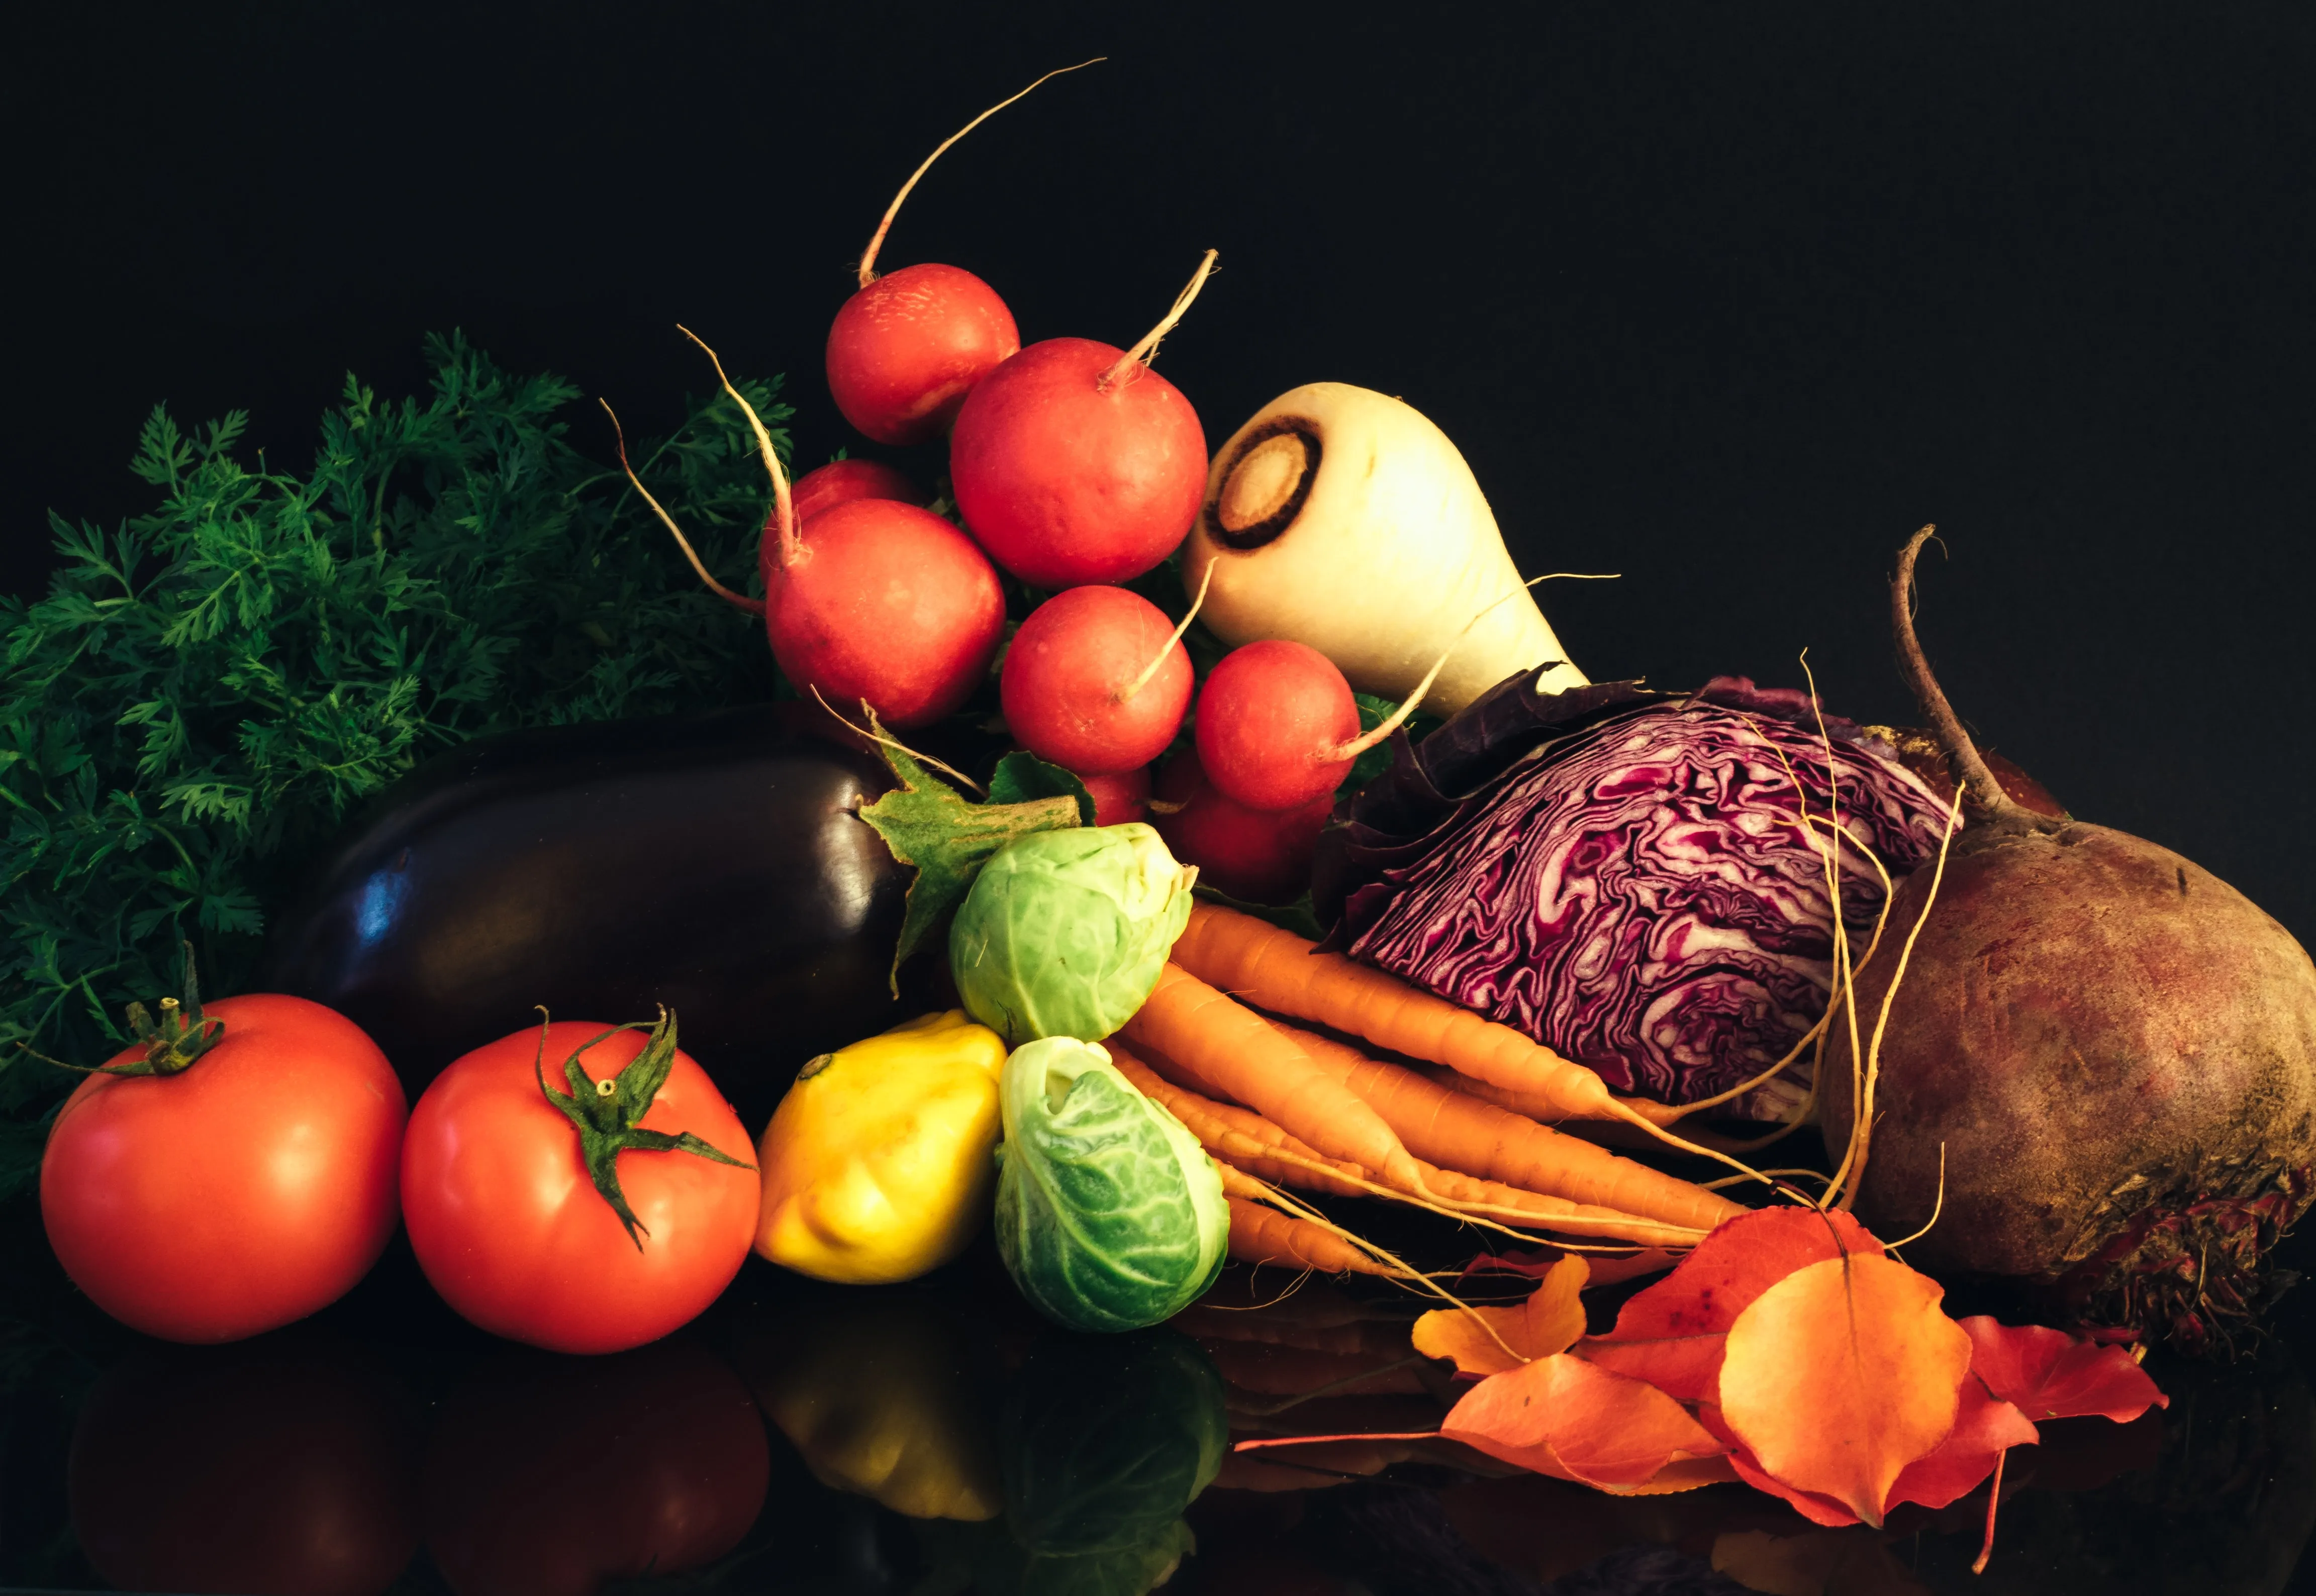 Assorted vegetables on black background